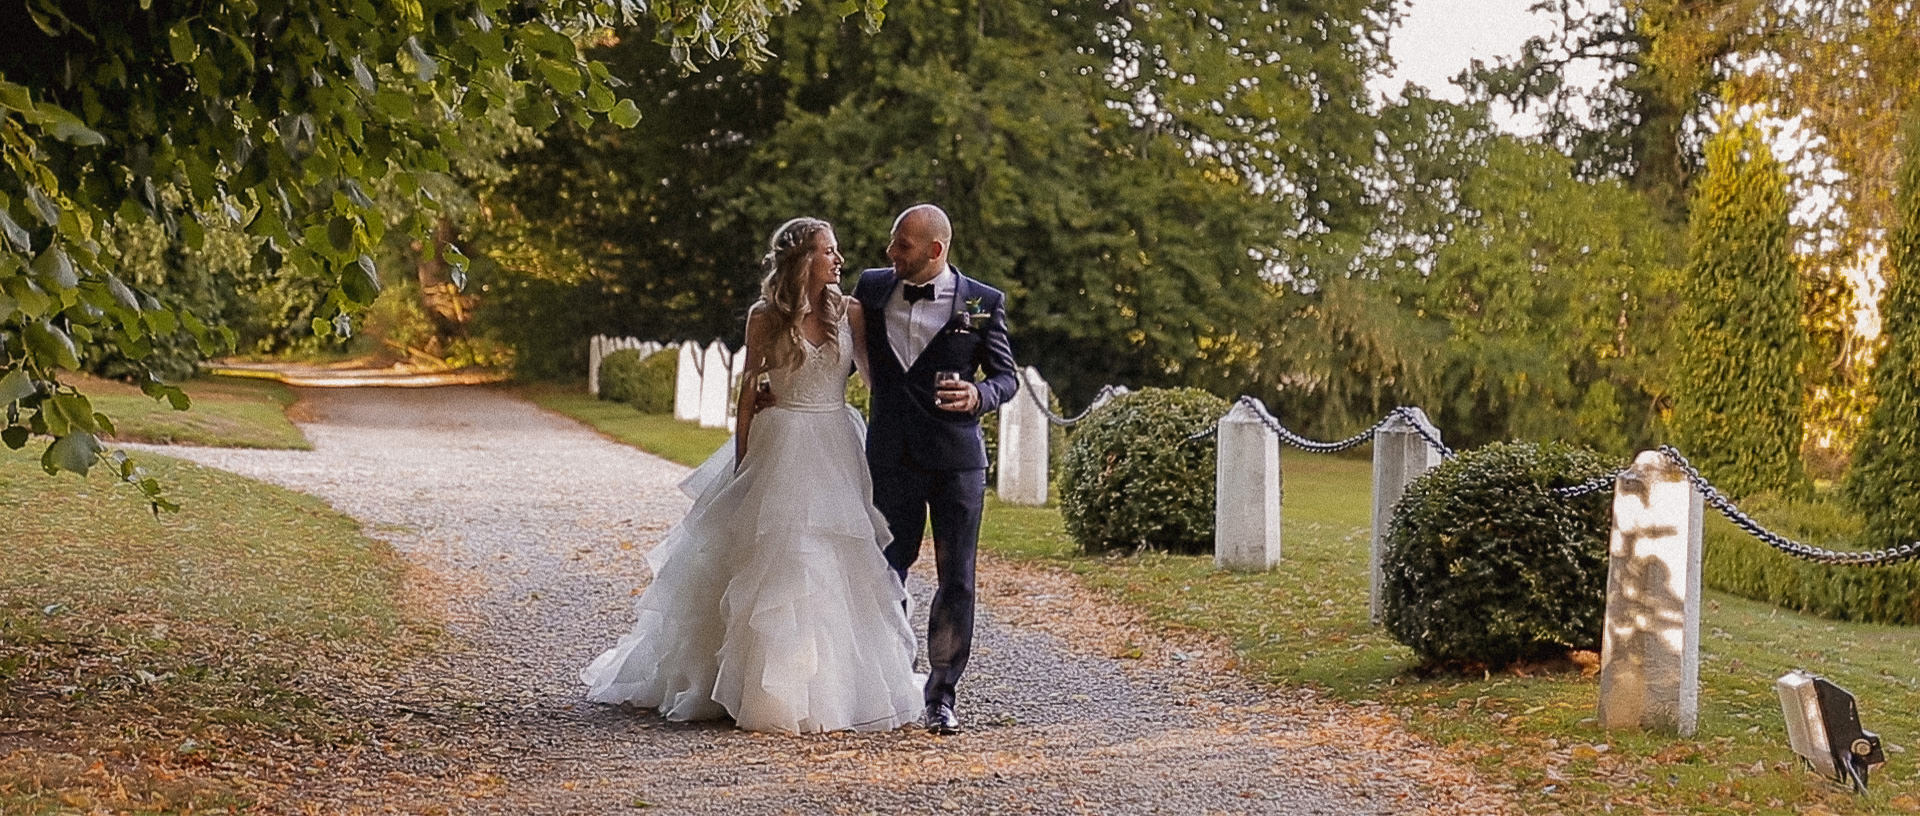 Achnagairn-Estate-Inverness-wedding-videographer